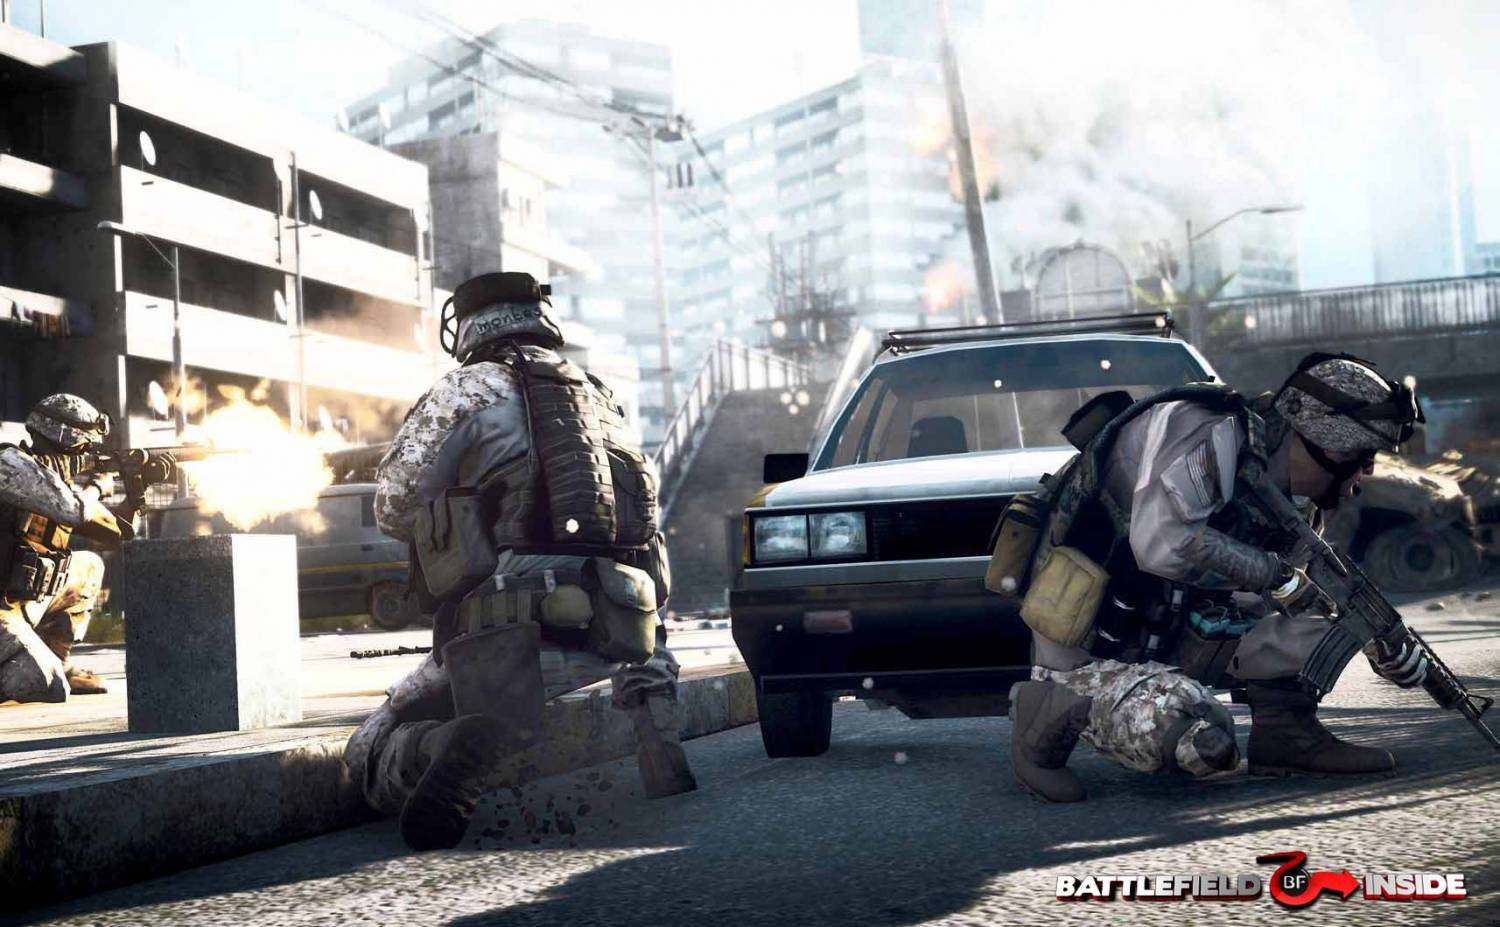 ЕА забанила сотни читеров в Battlefield 3